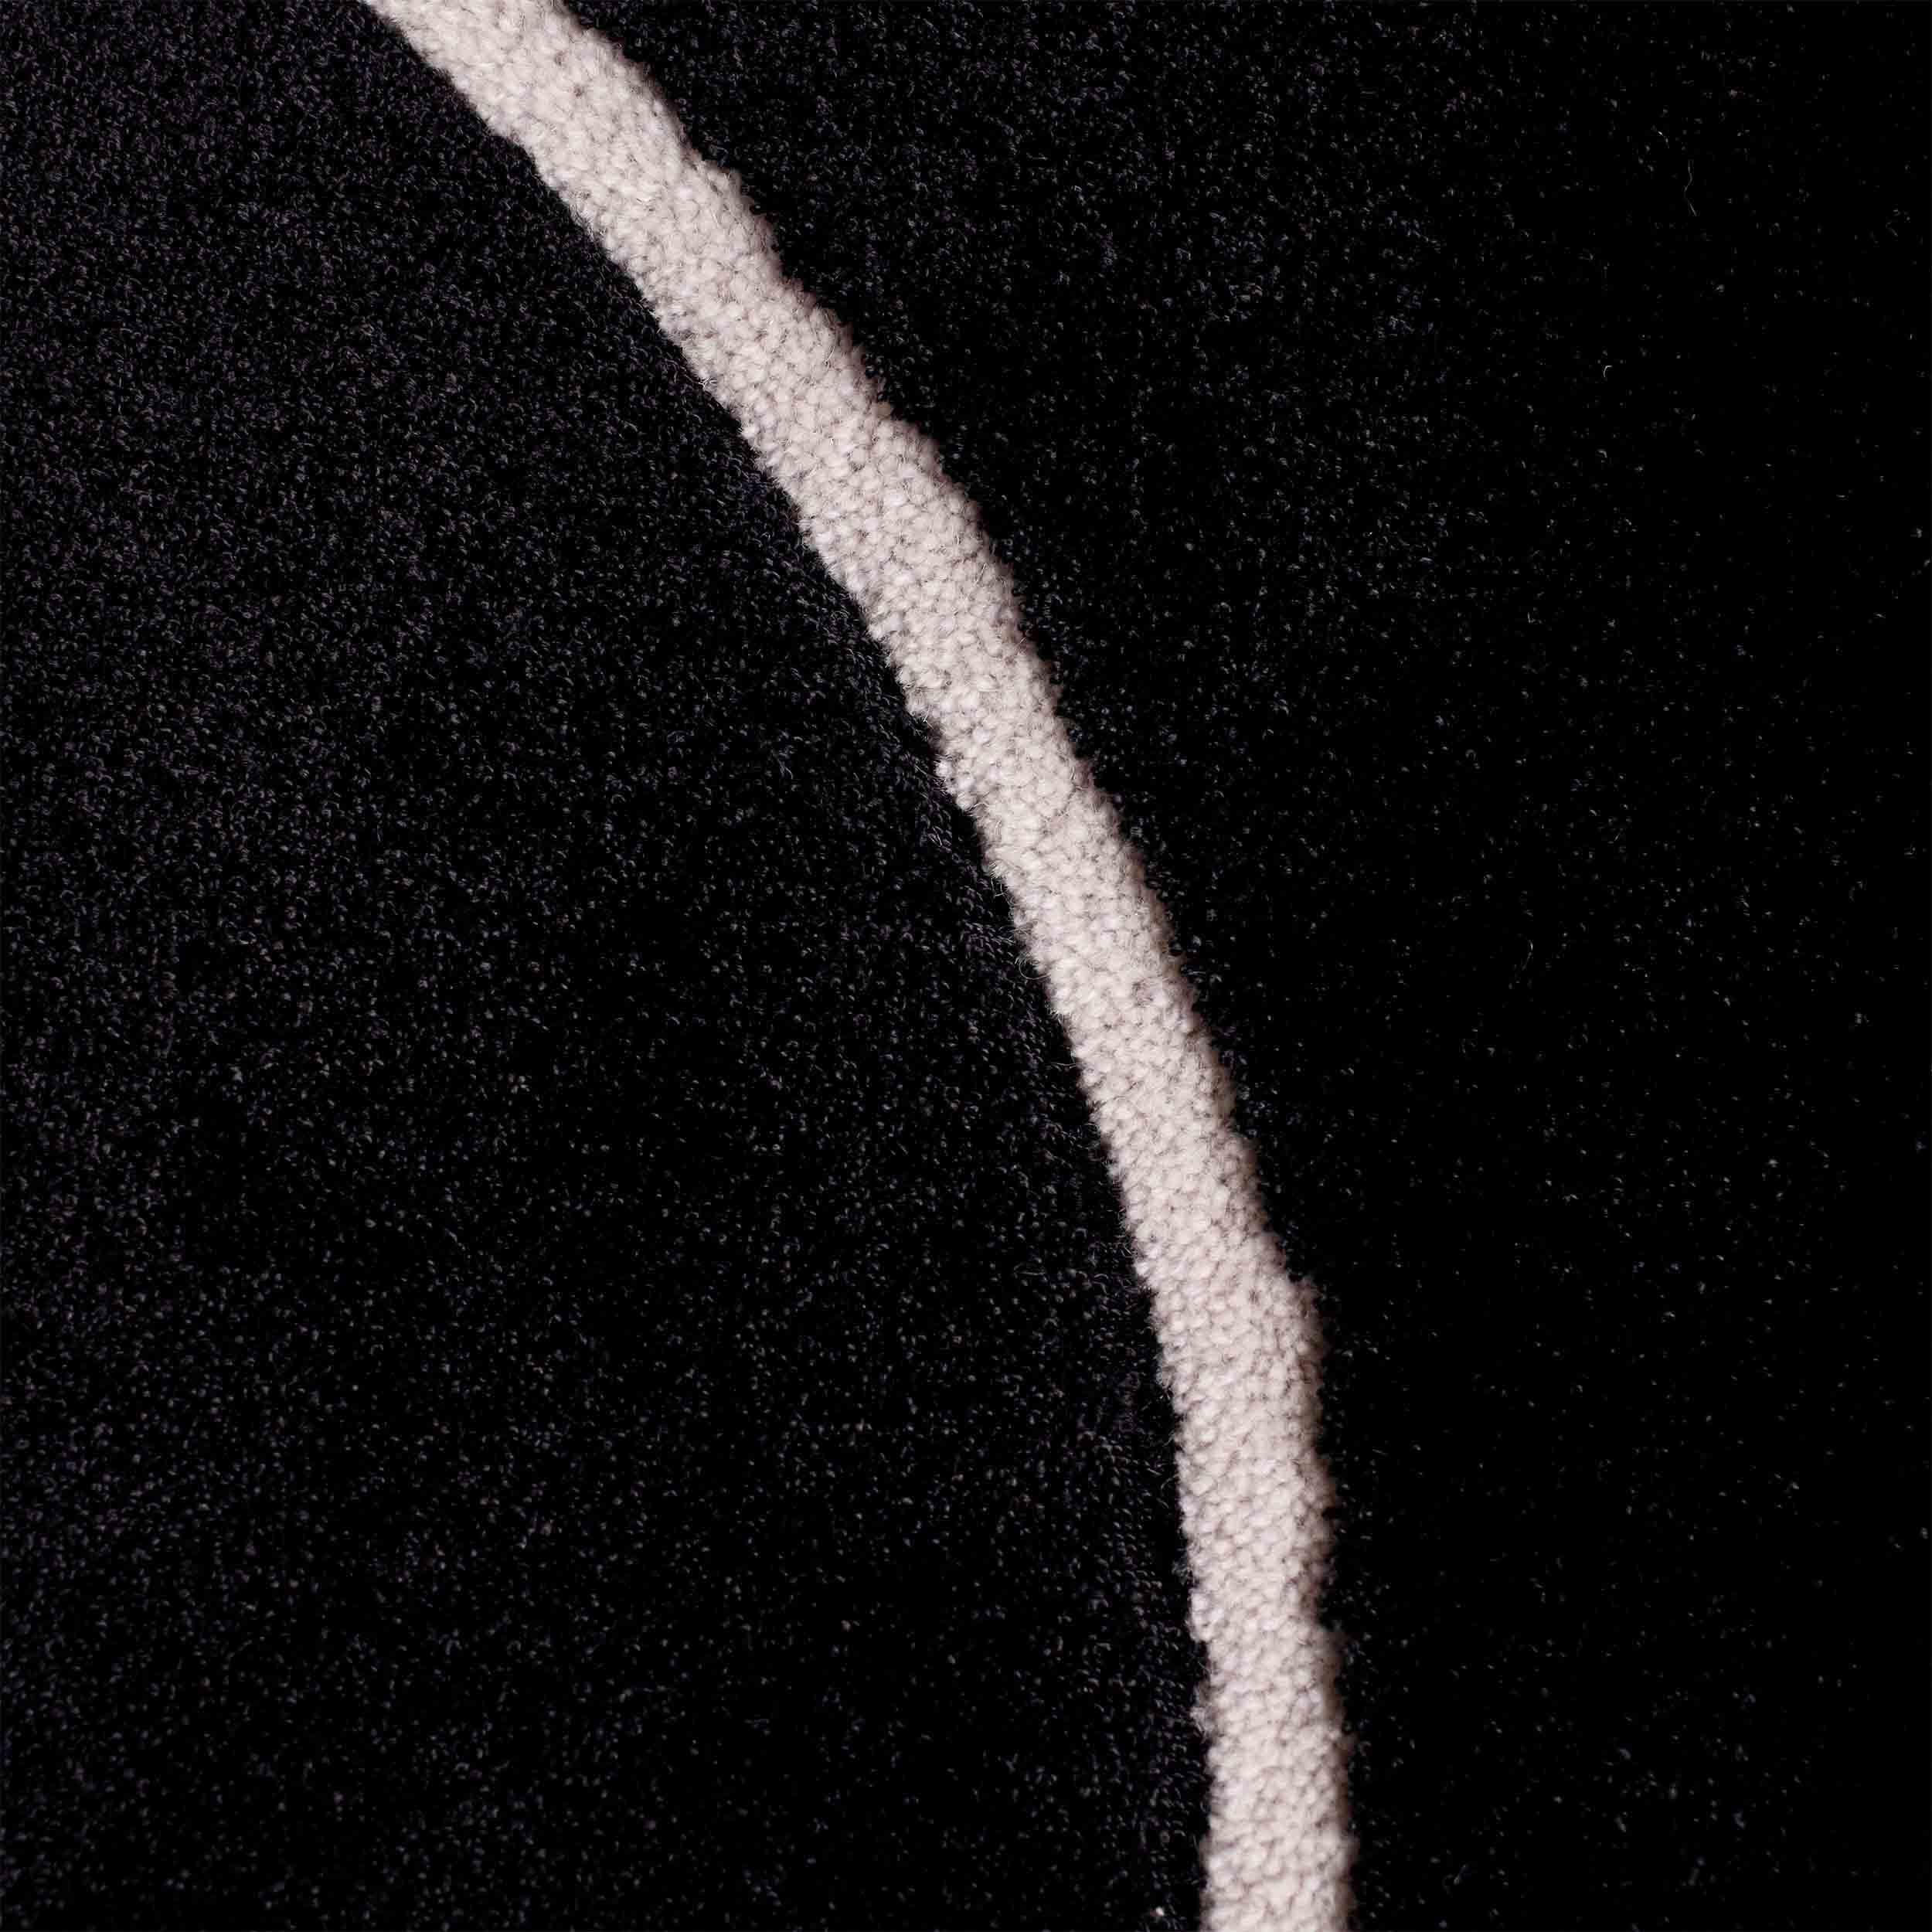 Midnight Black Squiggle présente une surface en viscose douce et brillante.

Taille : 4 x 5.5 ft 
MATERIAL : Viscose + laine
Couleur : Noir + Whiting*
Fabriqué en Suède

*Les couleurs peuvent varier en fonction de l'éclairage et de la photographie.